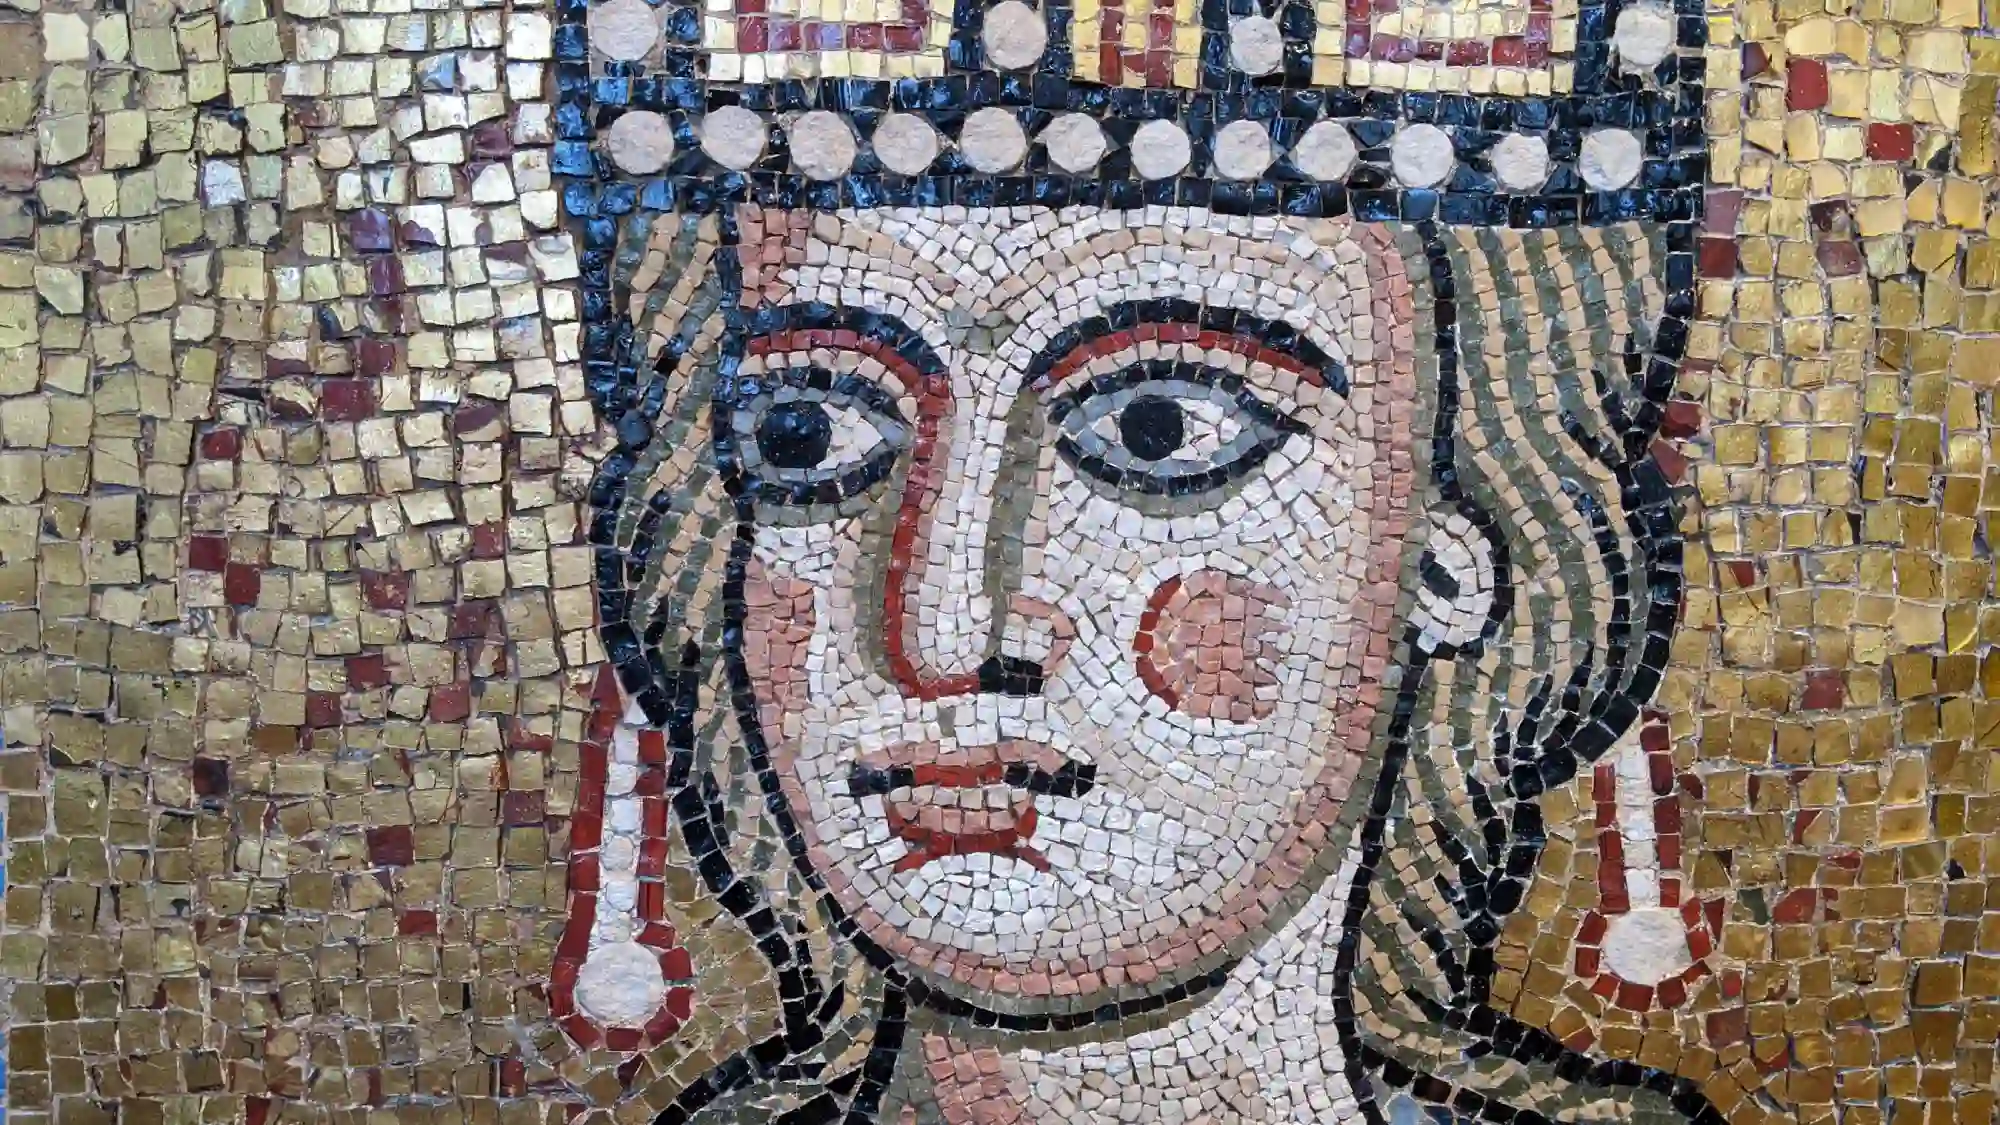 Dettaglio del mosaico policromo, Ecclesia romana, XII sec. d.C, dalla Basilica di San Pietro